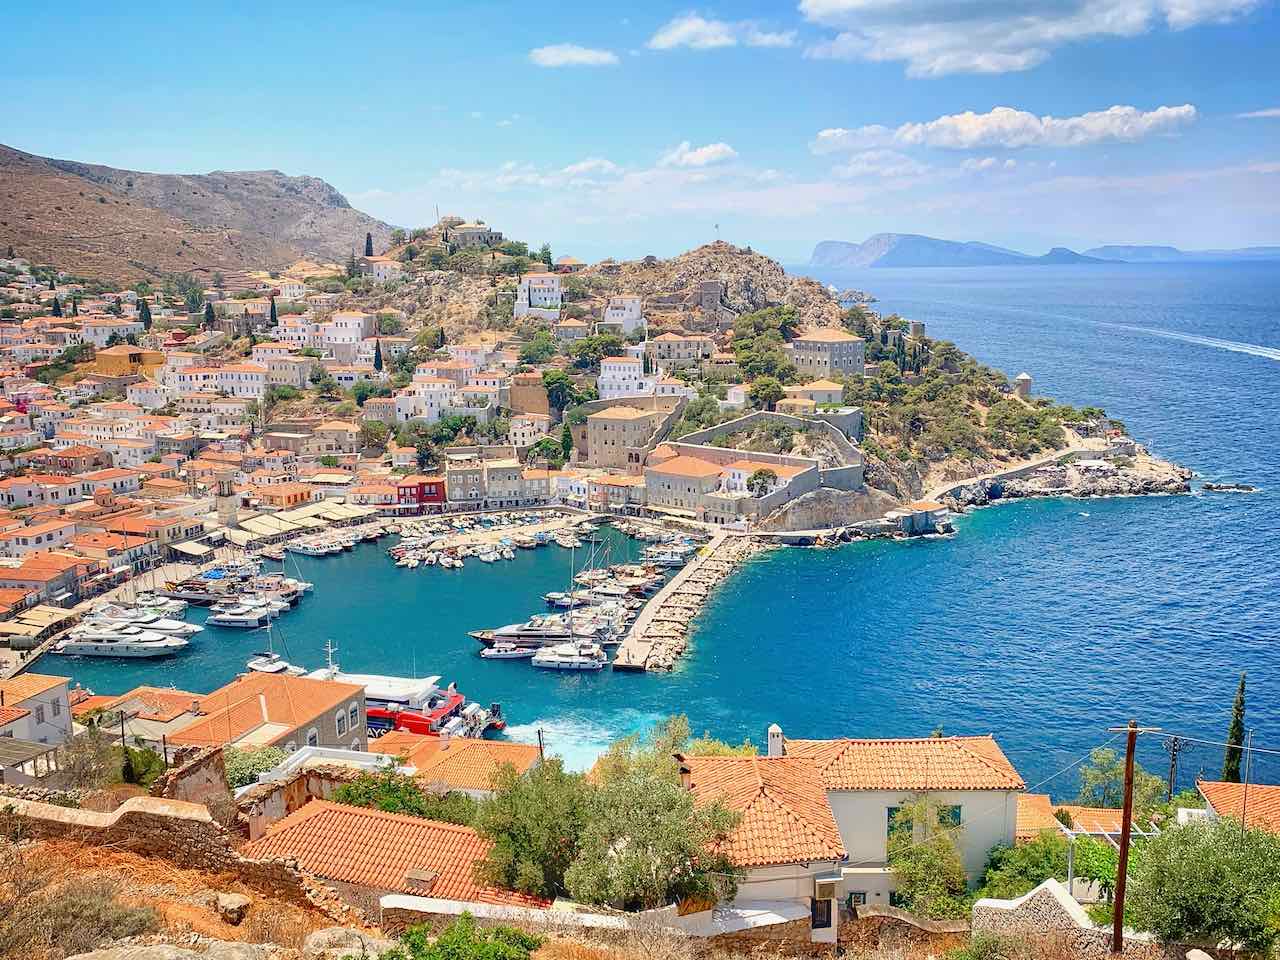 Hafen der Insel Hydra (Ydra), Griechenland